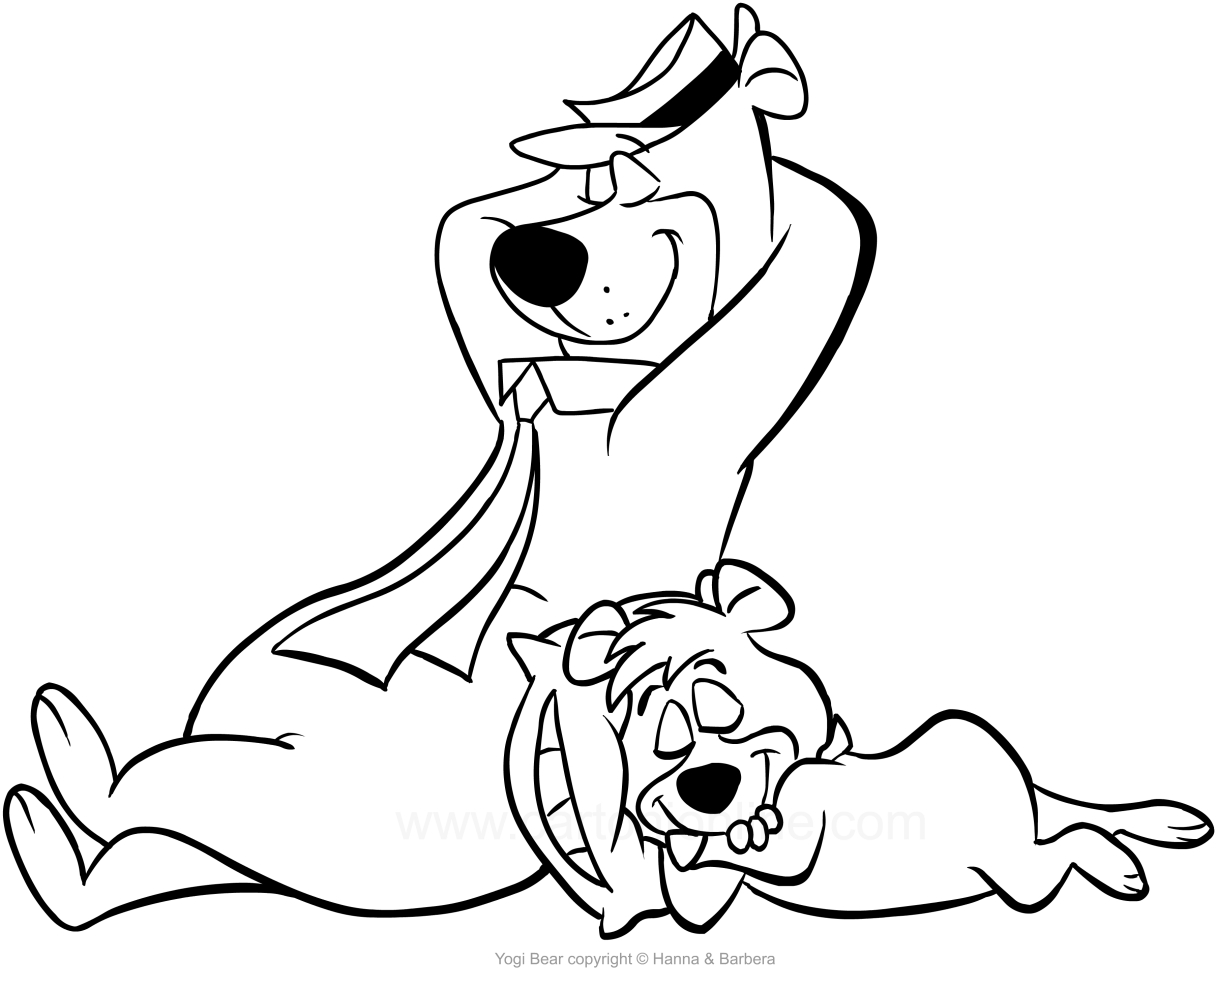 Dibujando al Bear Yogi y Bubu durmiendo para imprimir y colorear